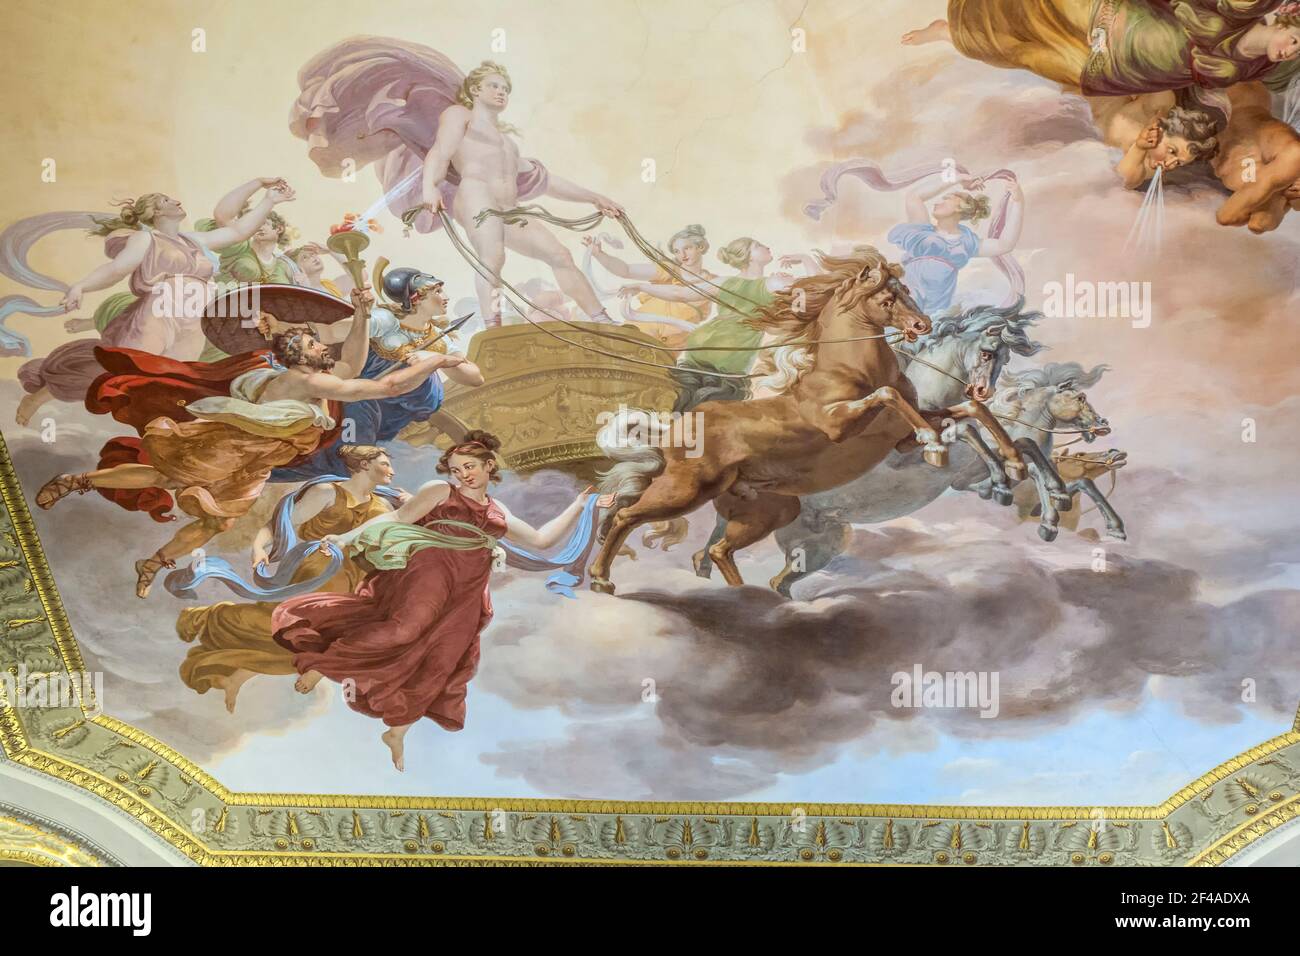 Florence, Italie. Plafond peint dans le palais Pitti (Palazzo Pitti). (À usage éditorial uniquement) Banque D'Images